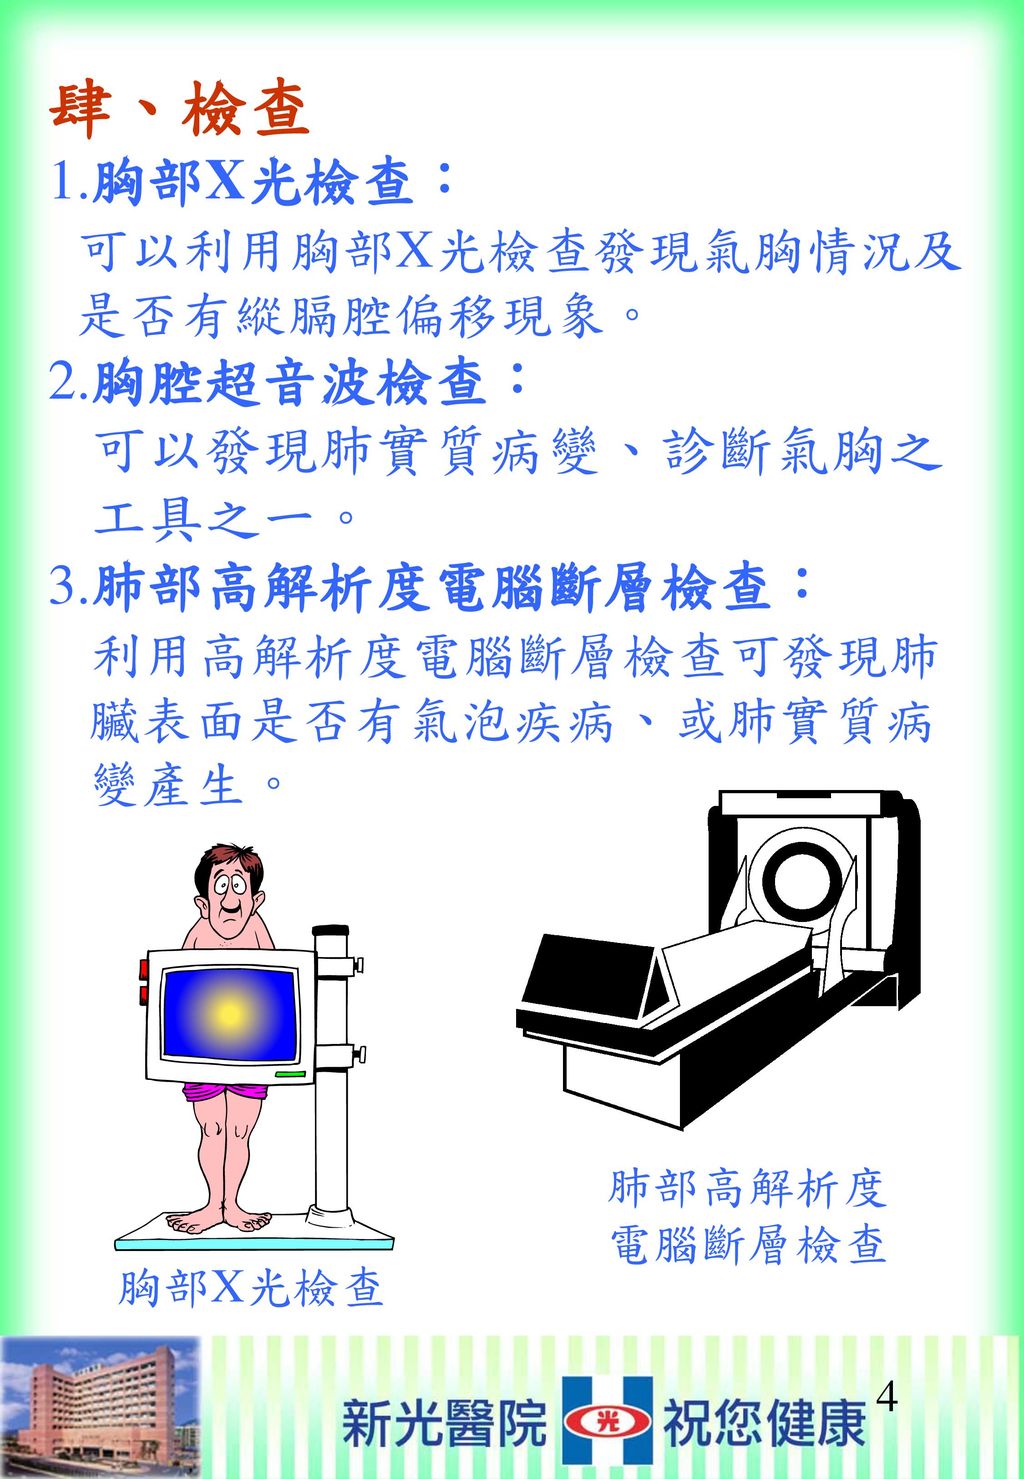 肆、檢查 1. 胸部X光檢查： 可以利用胸部X光檢查發現氣胸情況及 是否有縱膈腔偏移現象。 2